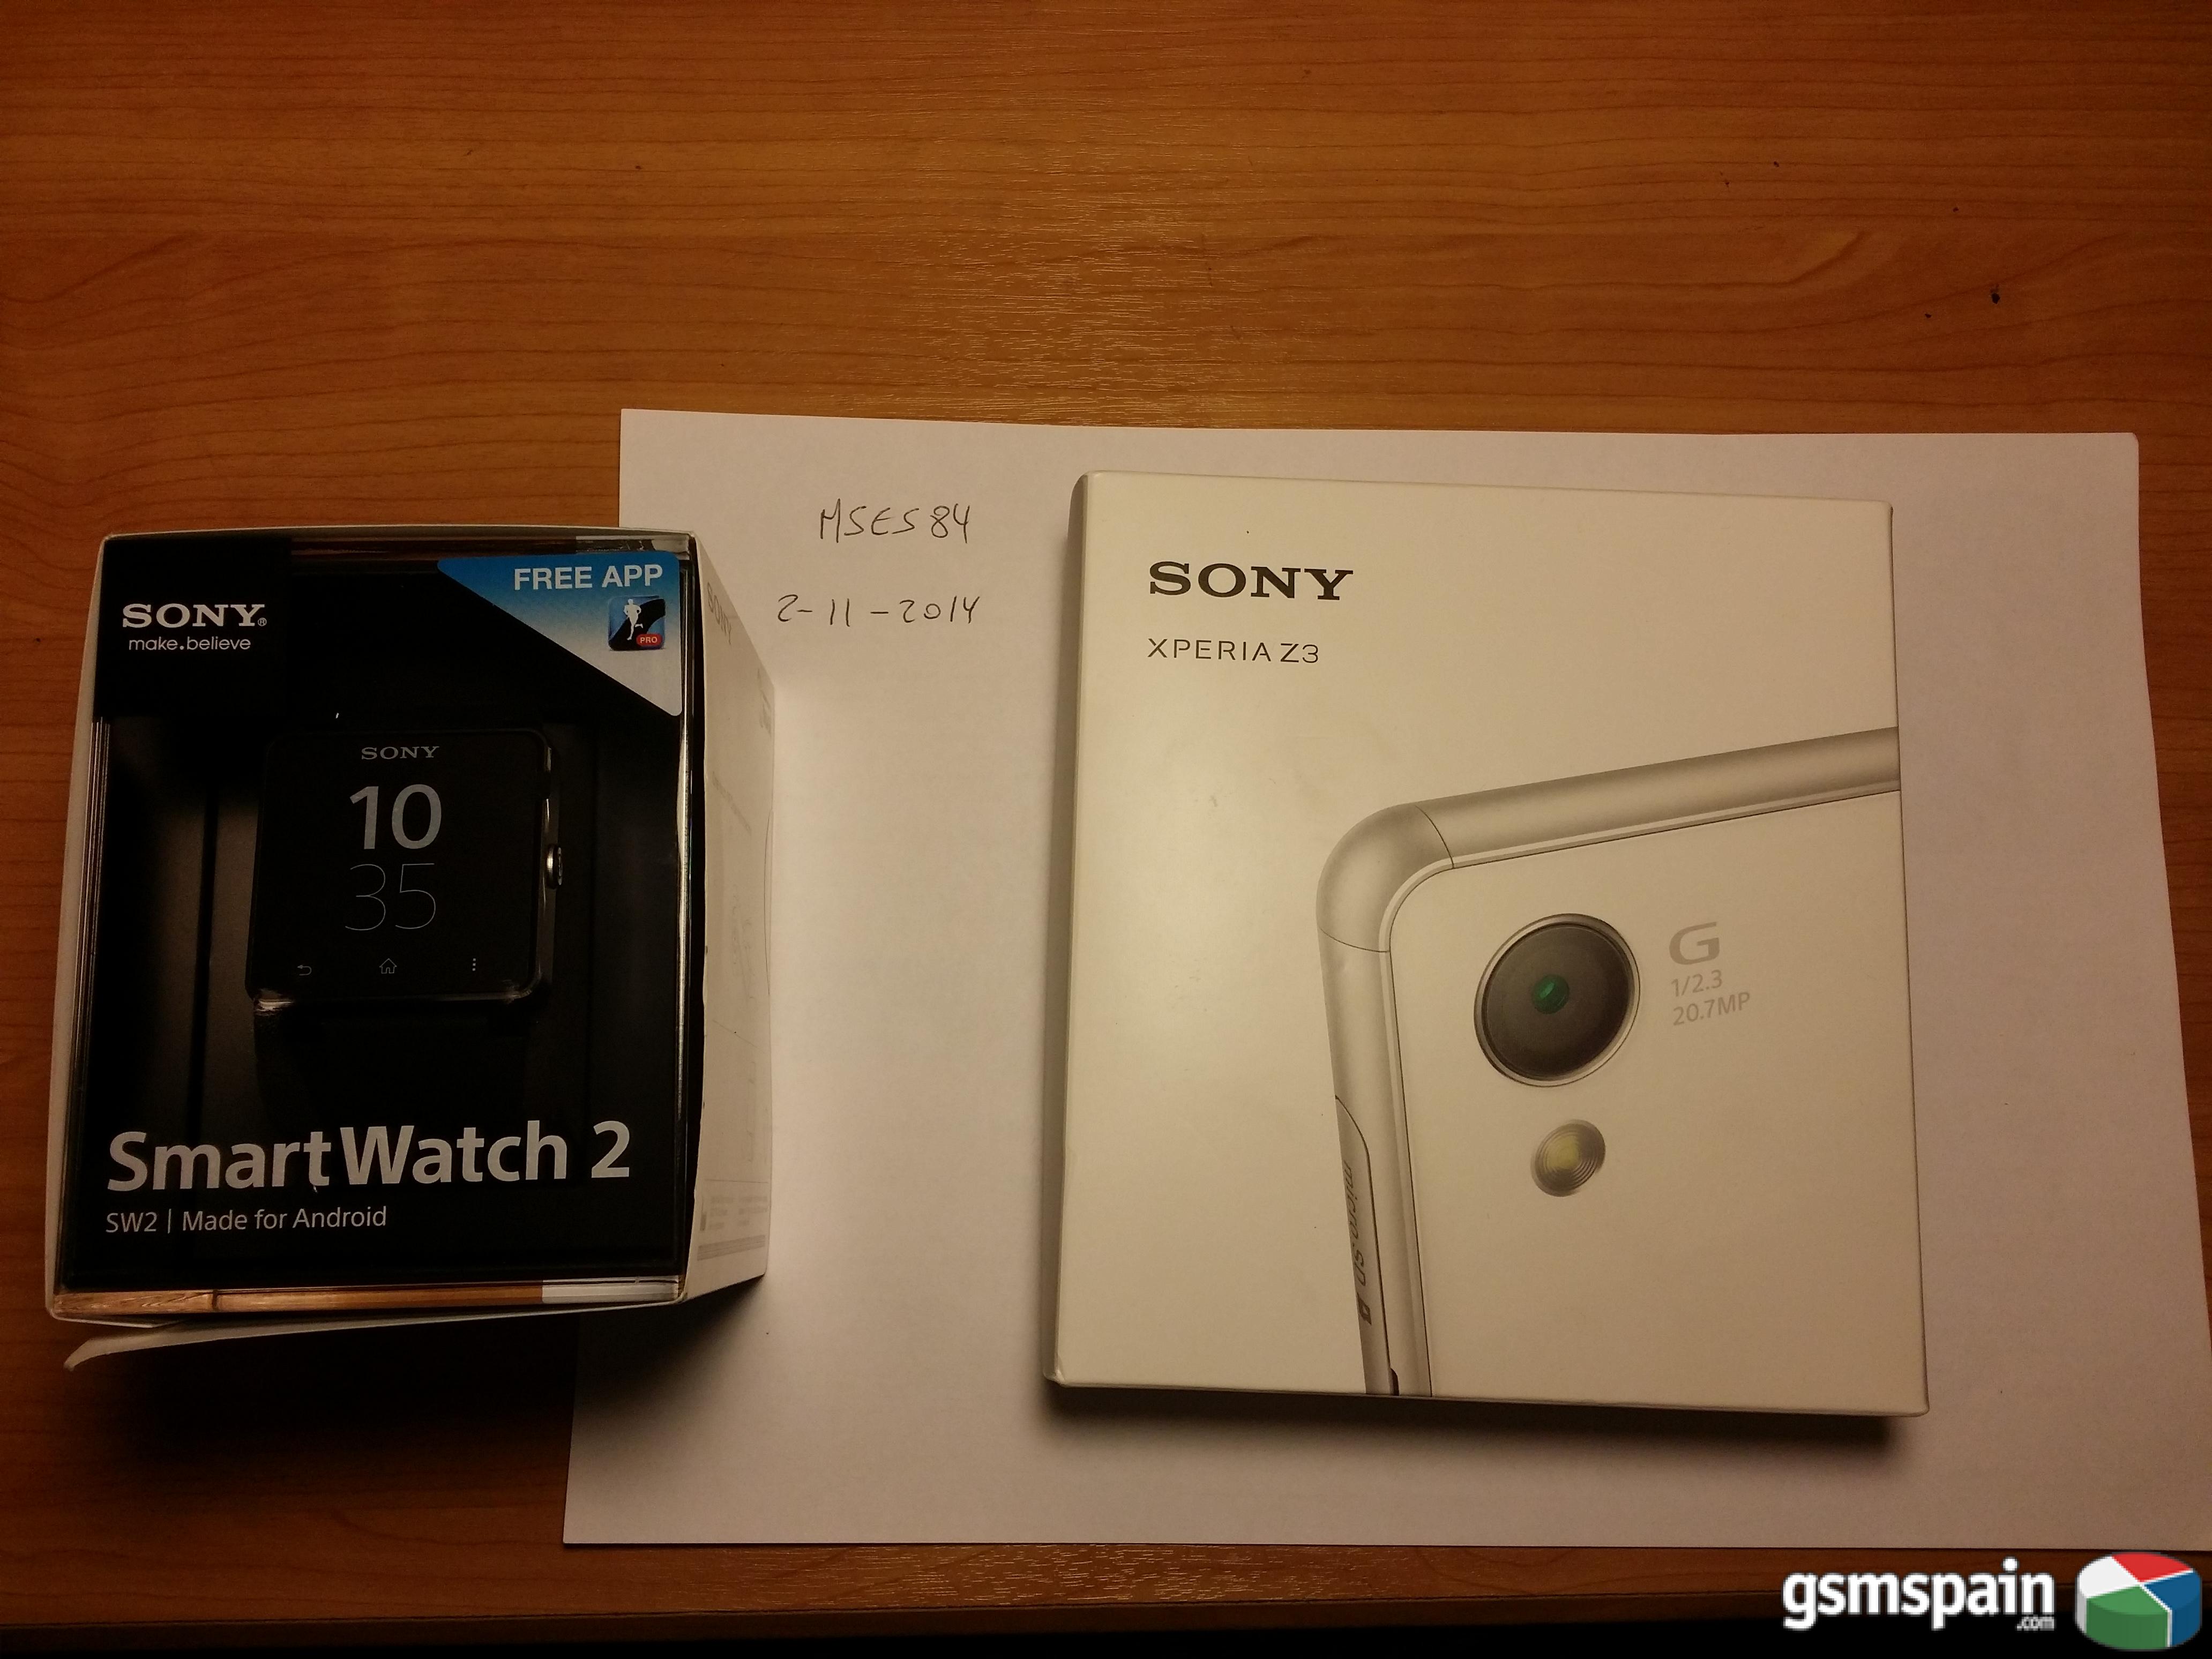 [VENDO] sony xperia z3 libre/Sony smartwatch2